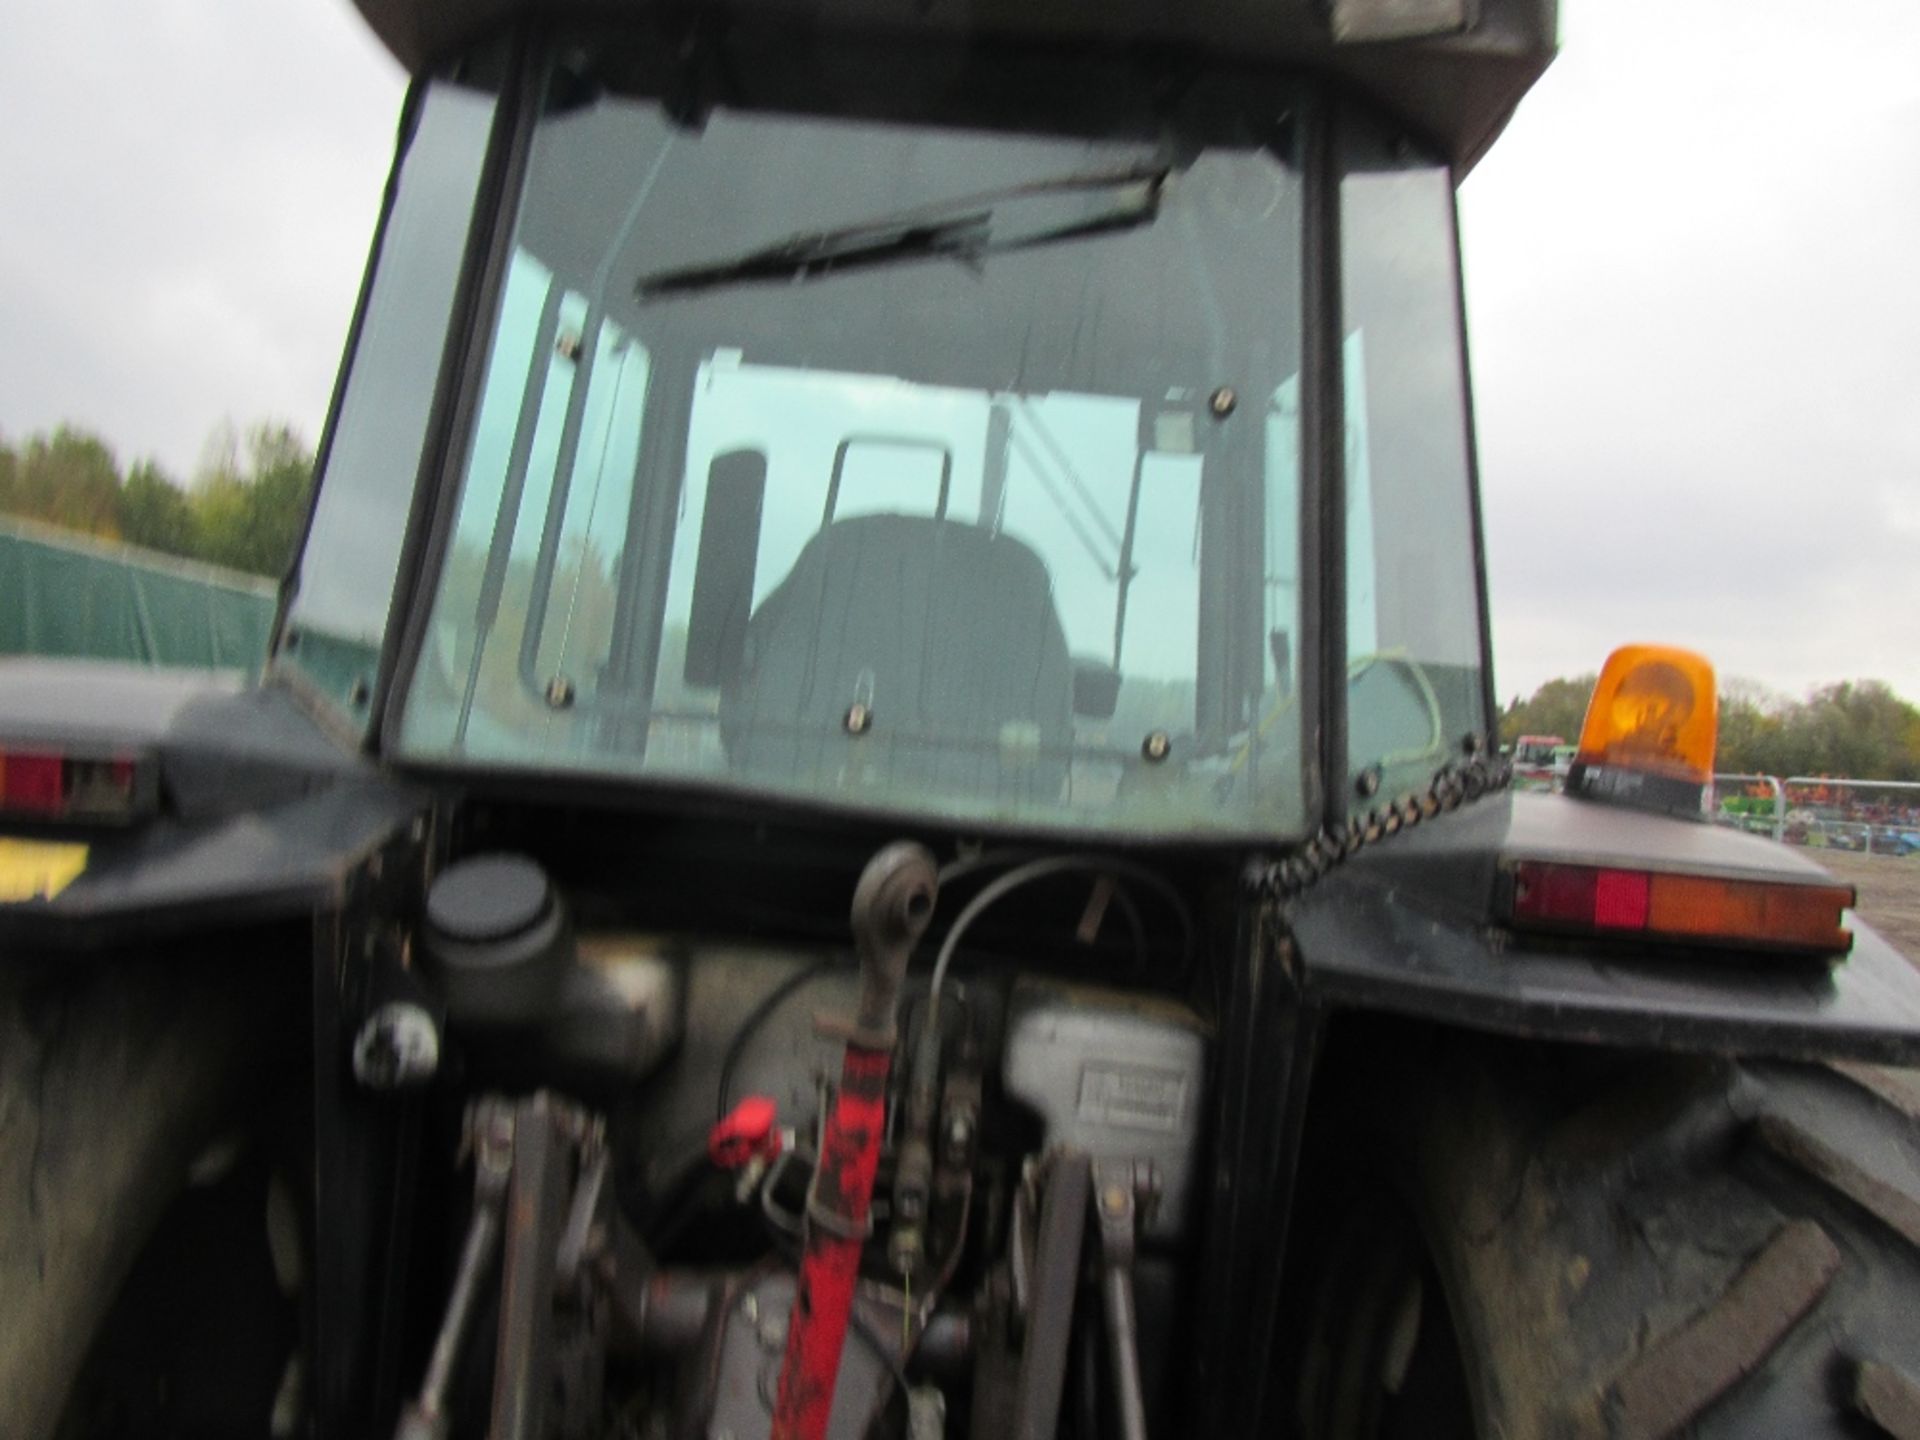 Massey Ferguson 3090 4wd Tractor. Reg No E459 KEW Ser No V301022 - Image 8 of 17